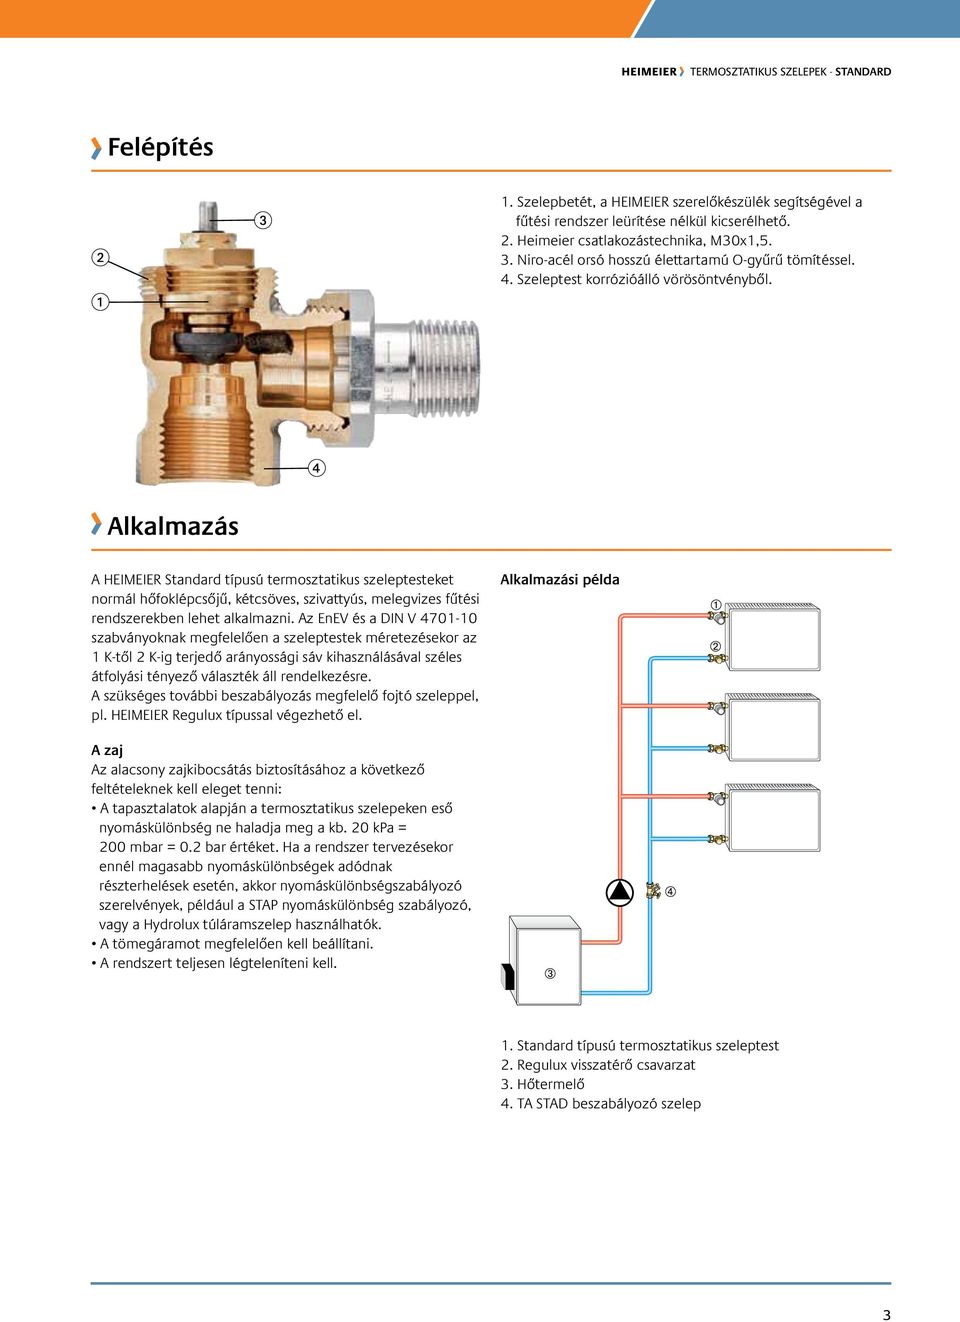 Standard. Előbeállítás nélküli termosztatikus szelep ENGINEERING ADVANTAGE  - PDF Ingyenes letöltés